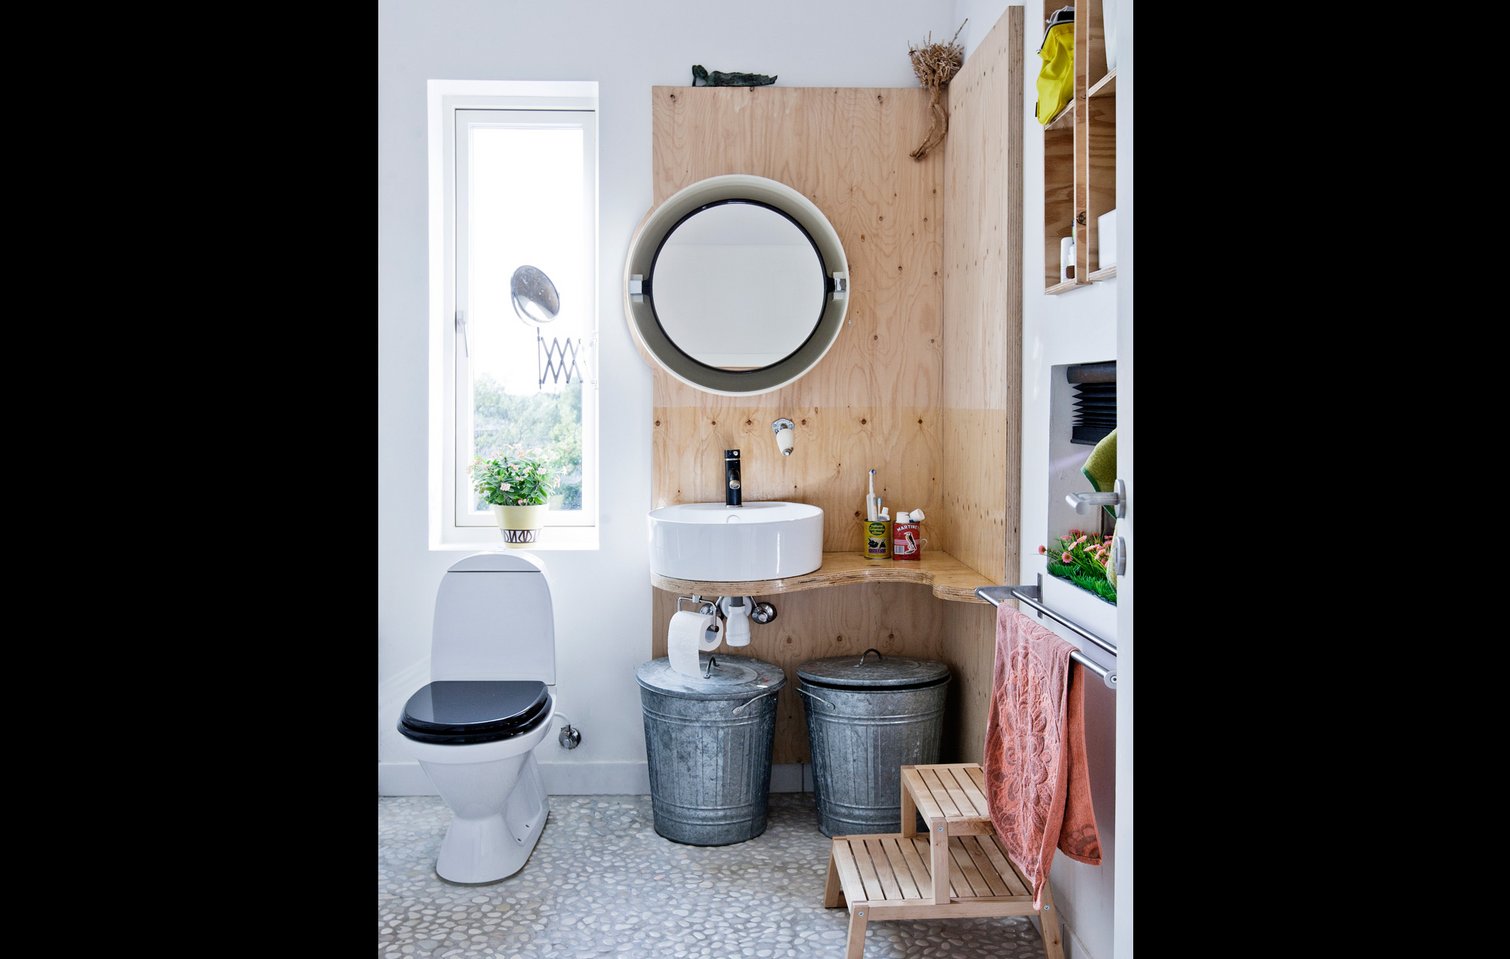 se tv kindben salami Inspiration til indretning af badeværelset - se 31 flotte løsninger